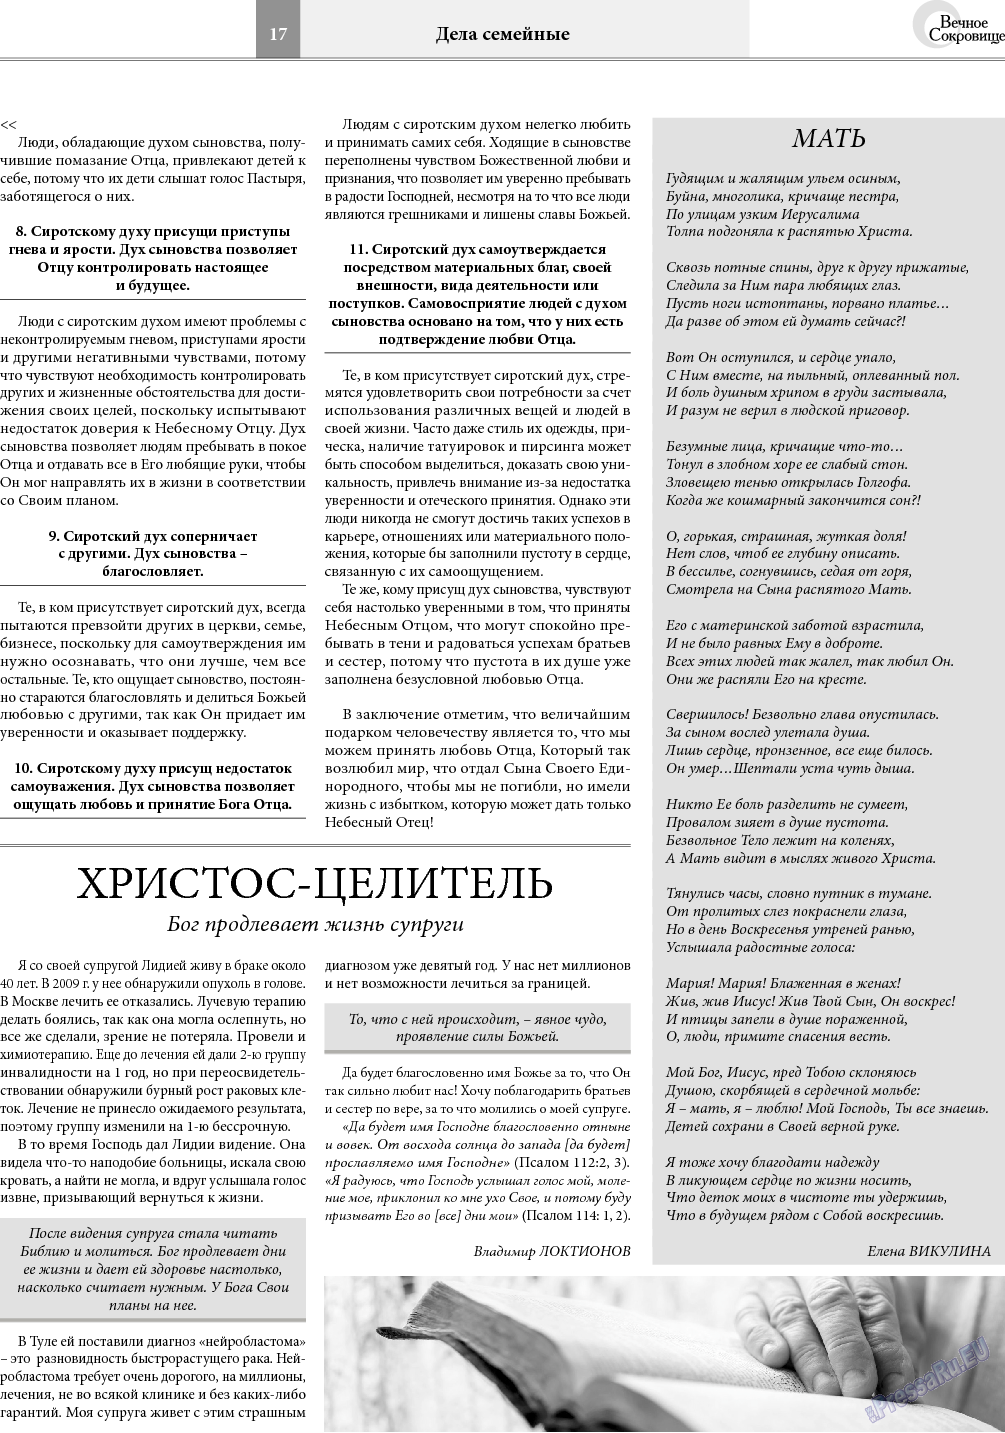 Вечное сокровище, газета. 2018 №2 стр.17